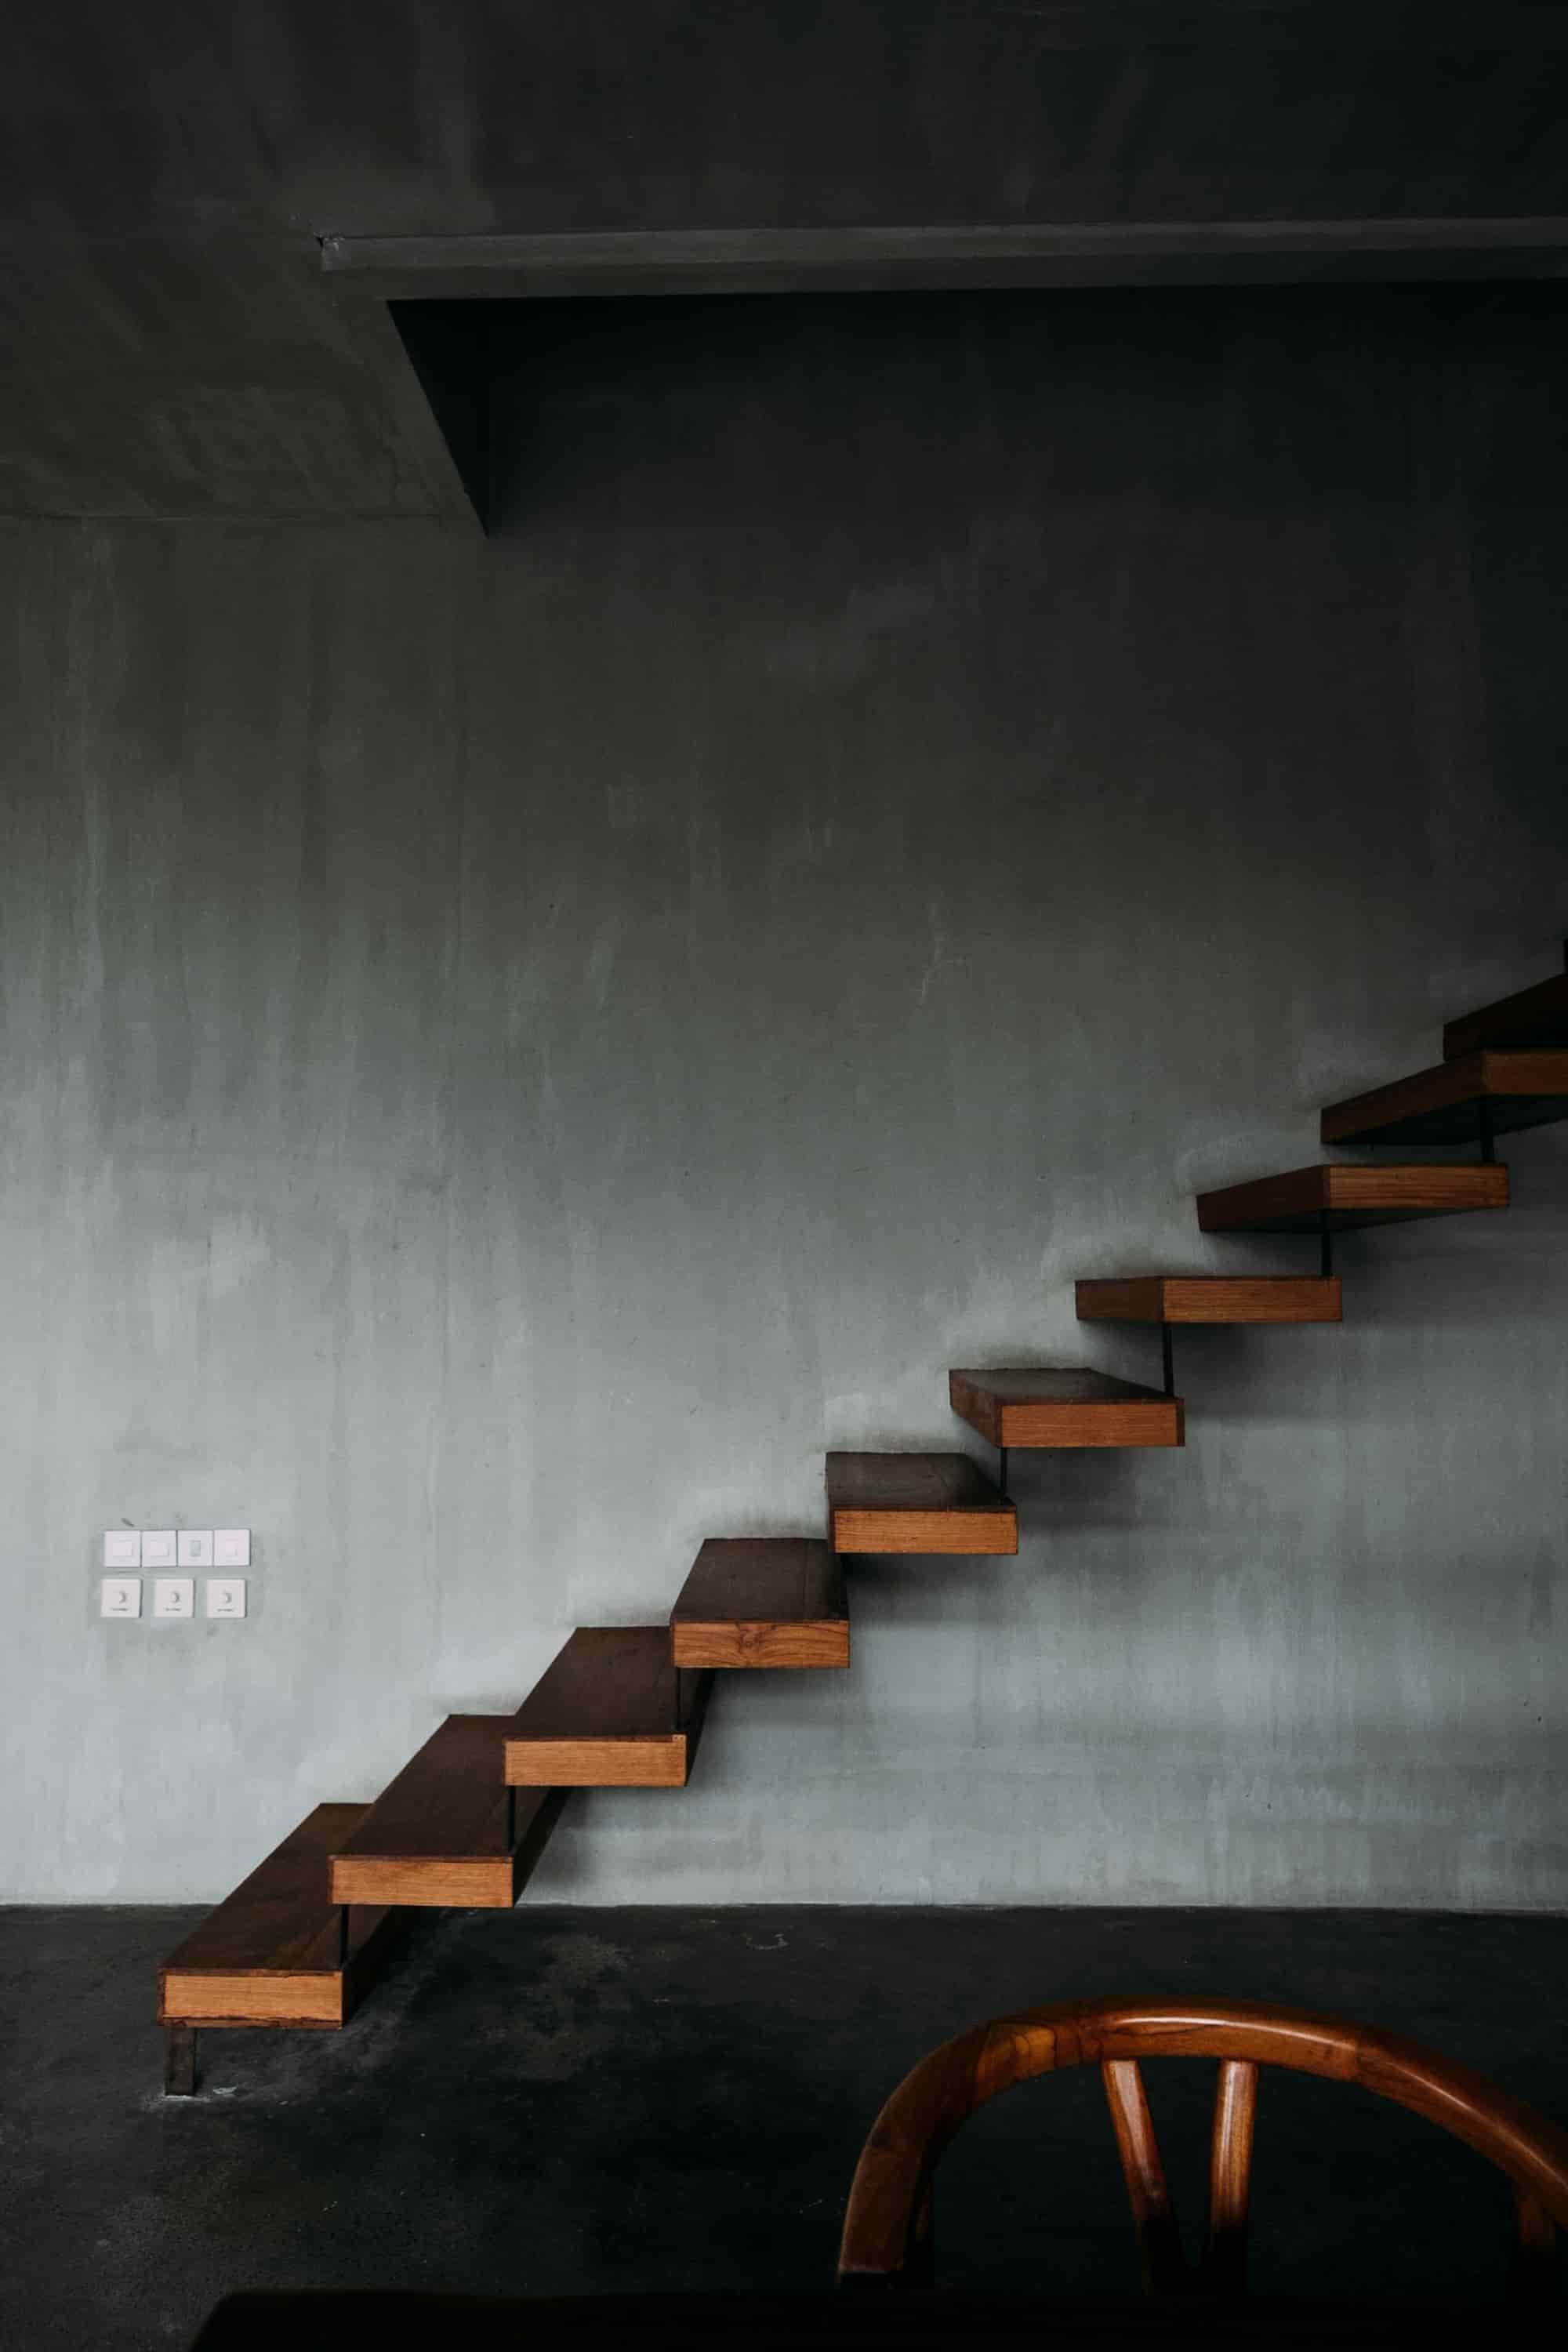 懸空式樓梯設計仍建議靠牆